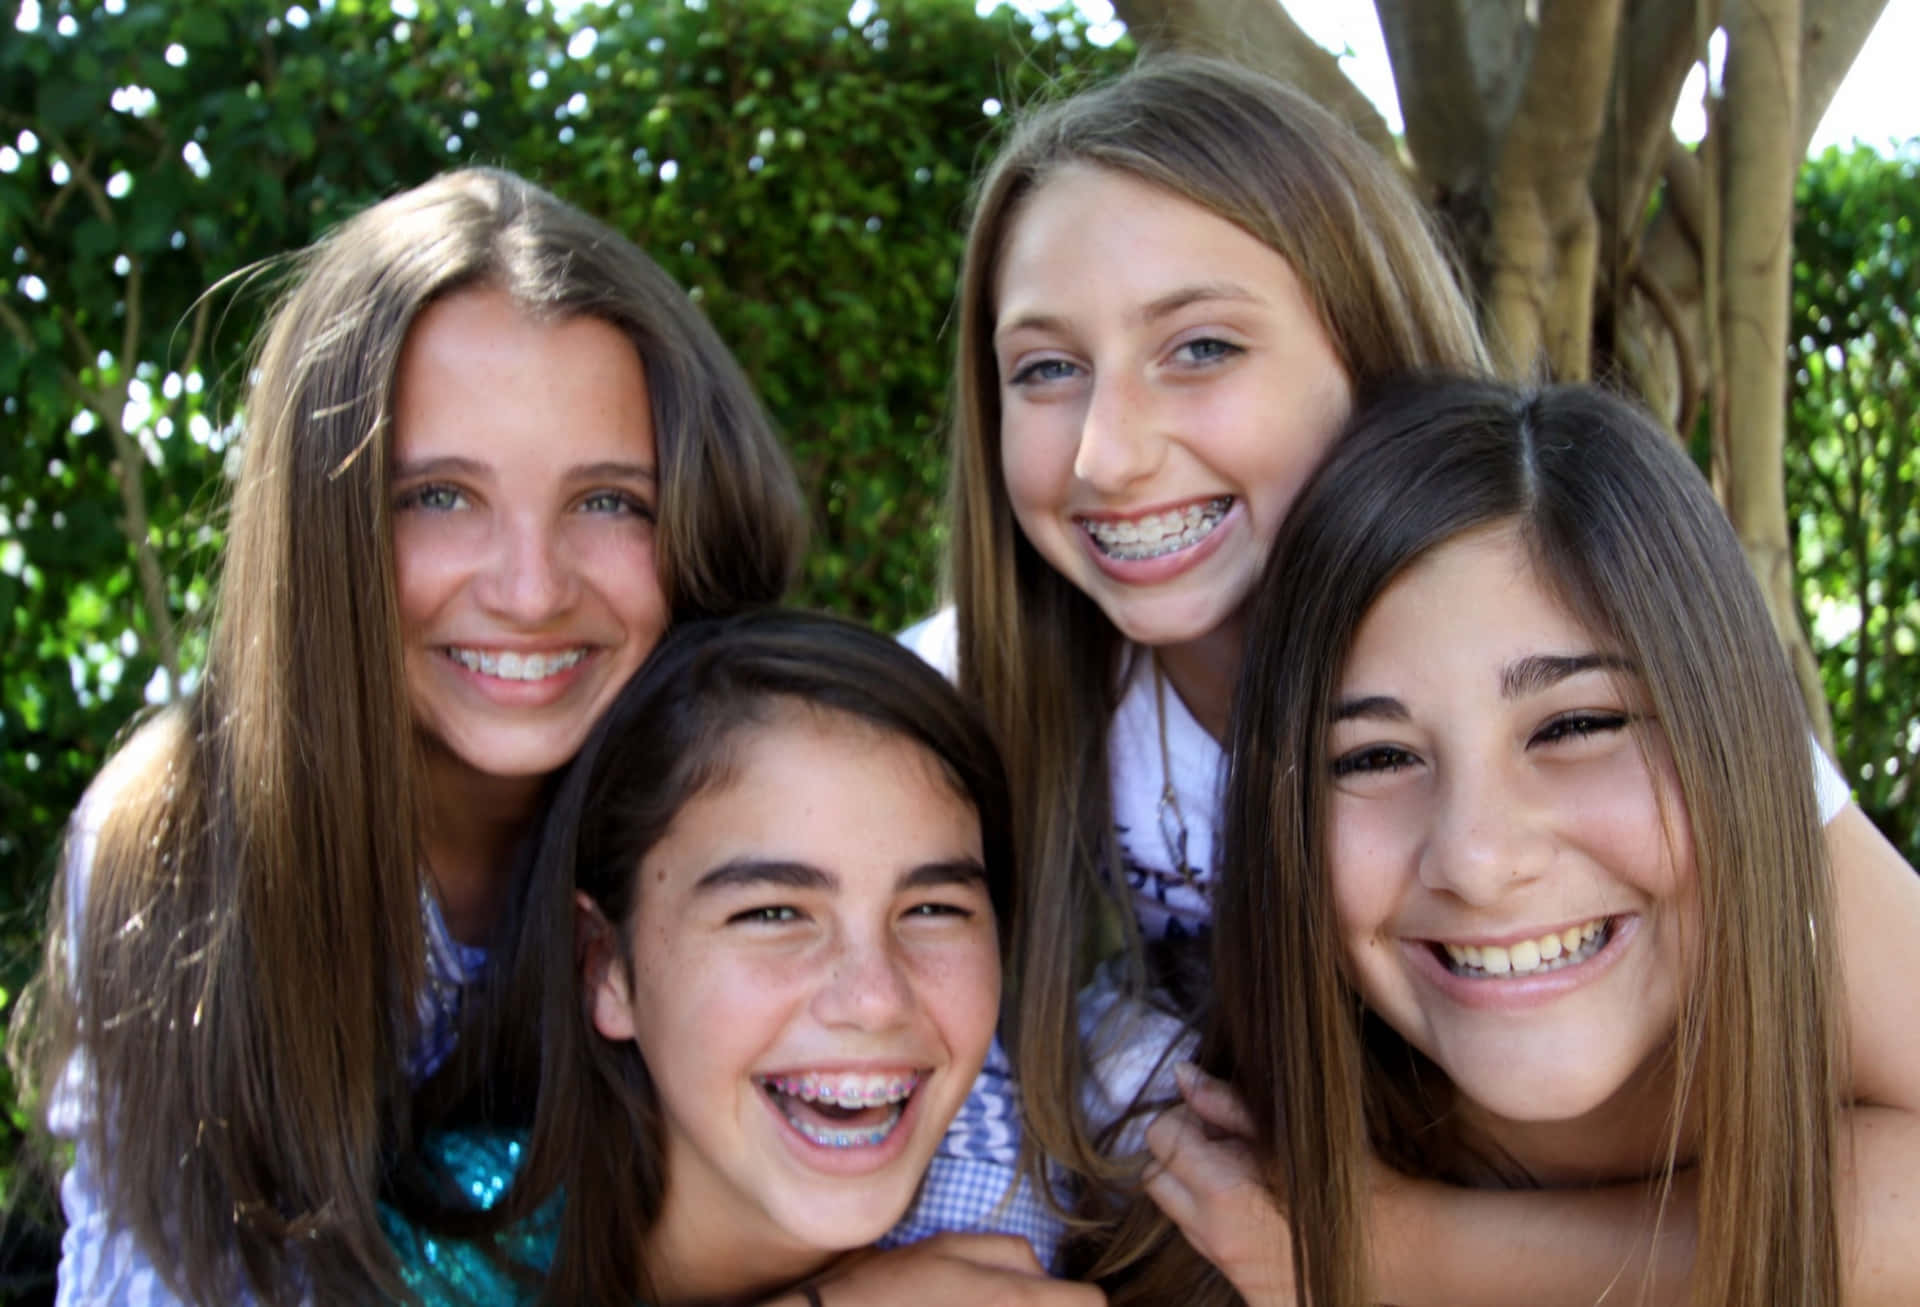 Imágenesde Chicas Adolescentes Sonriendo Y Adorables.